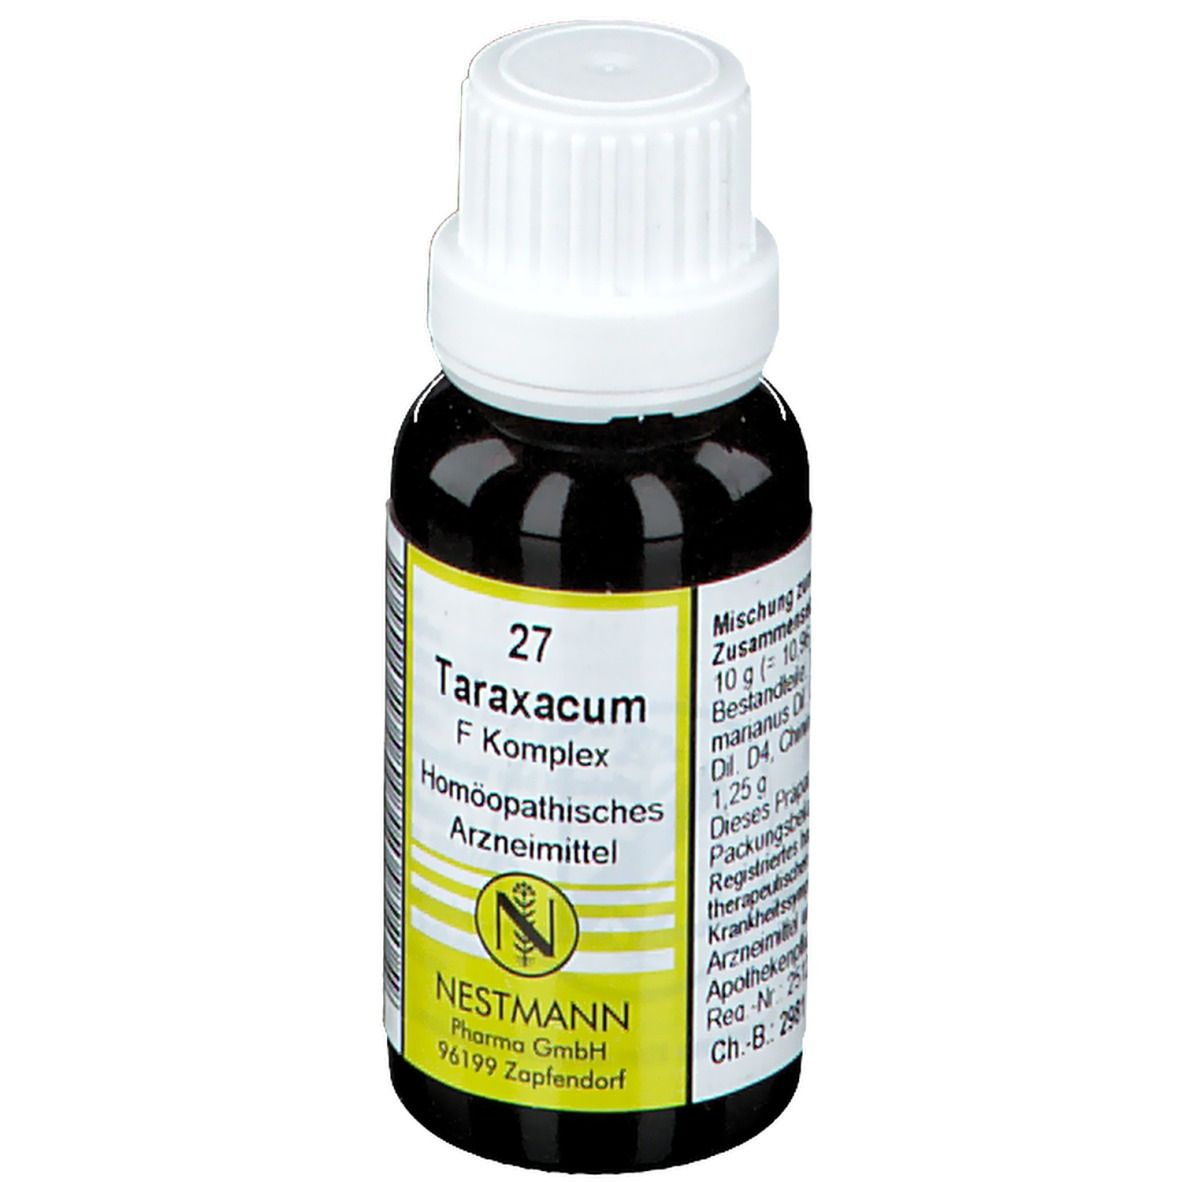 Taraxacum F Komplex 27 Nestmann